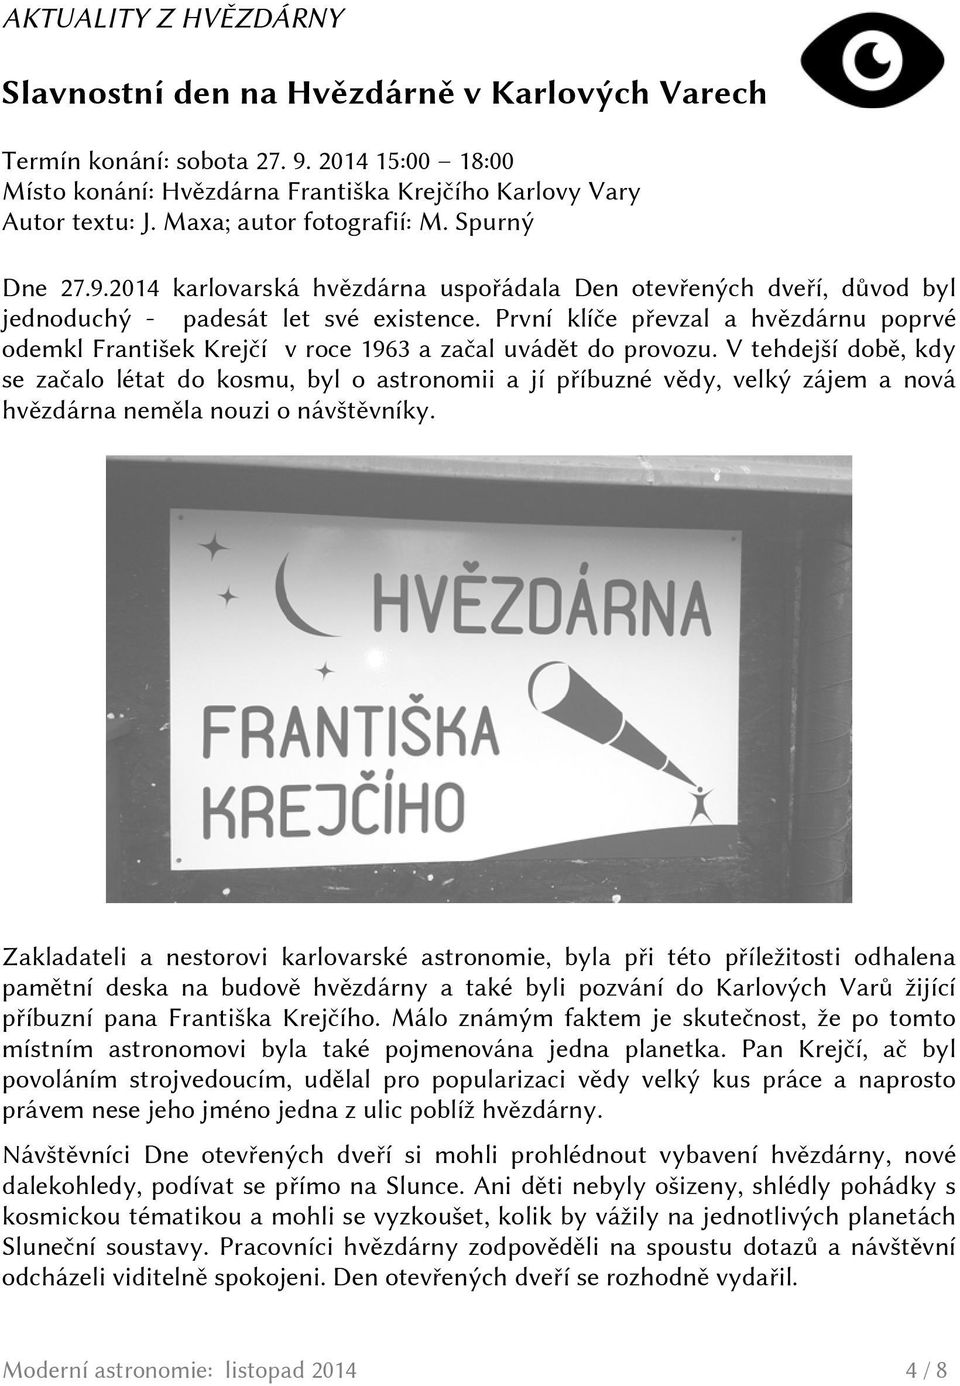 První klíče převzal a hvězdárnu poprvé odemkl František Krejčí v roce 1963 a začal uvádět do provozu.